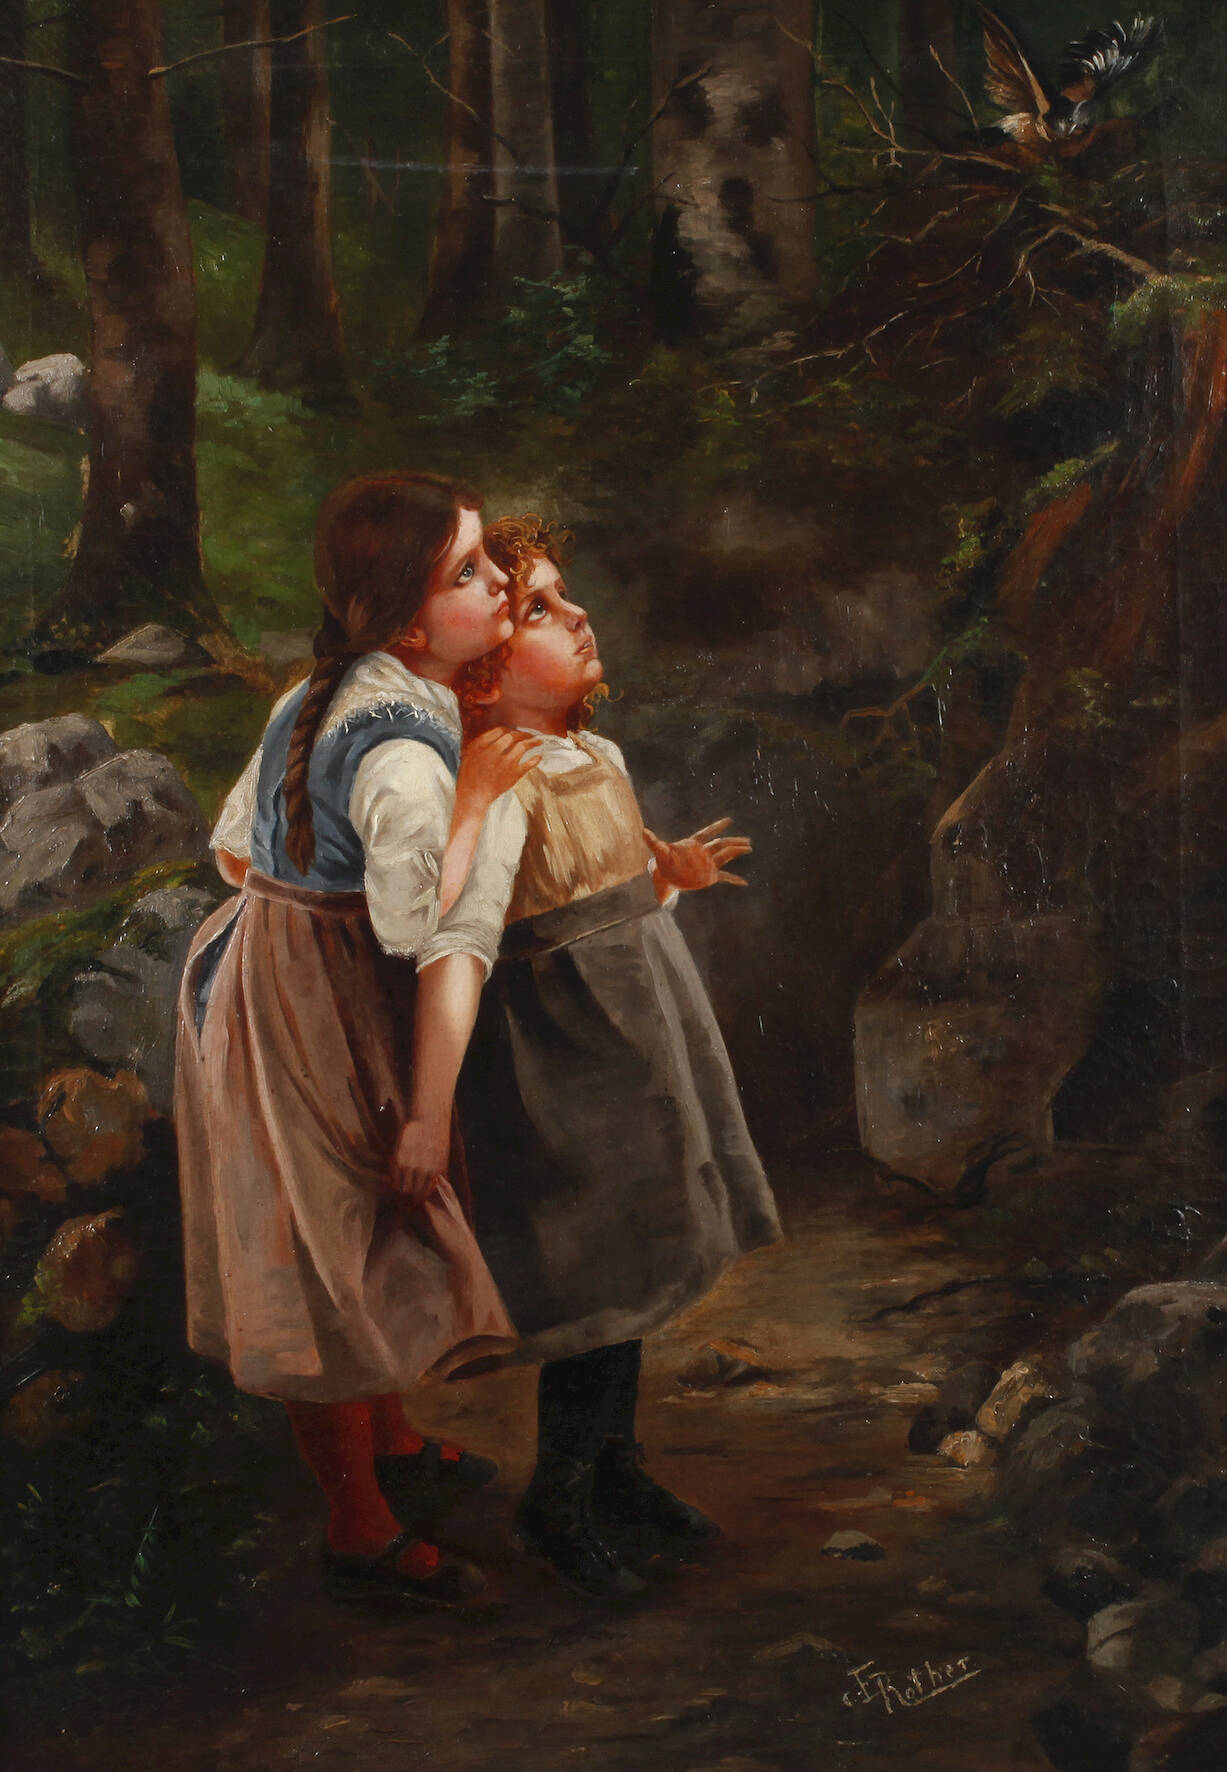 E. Rother, Staunende Kinder im Wald